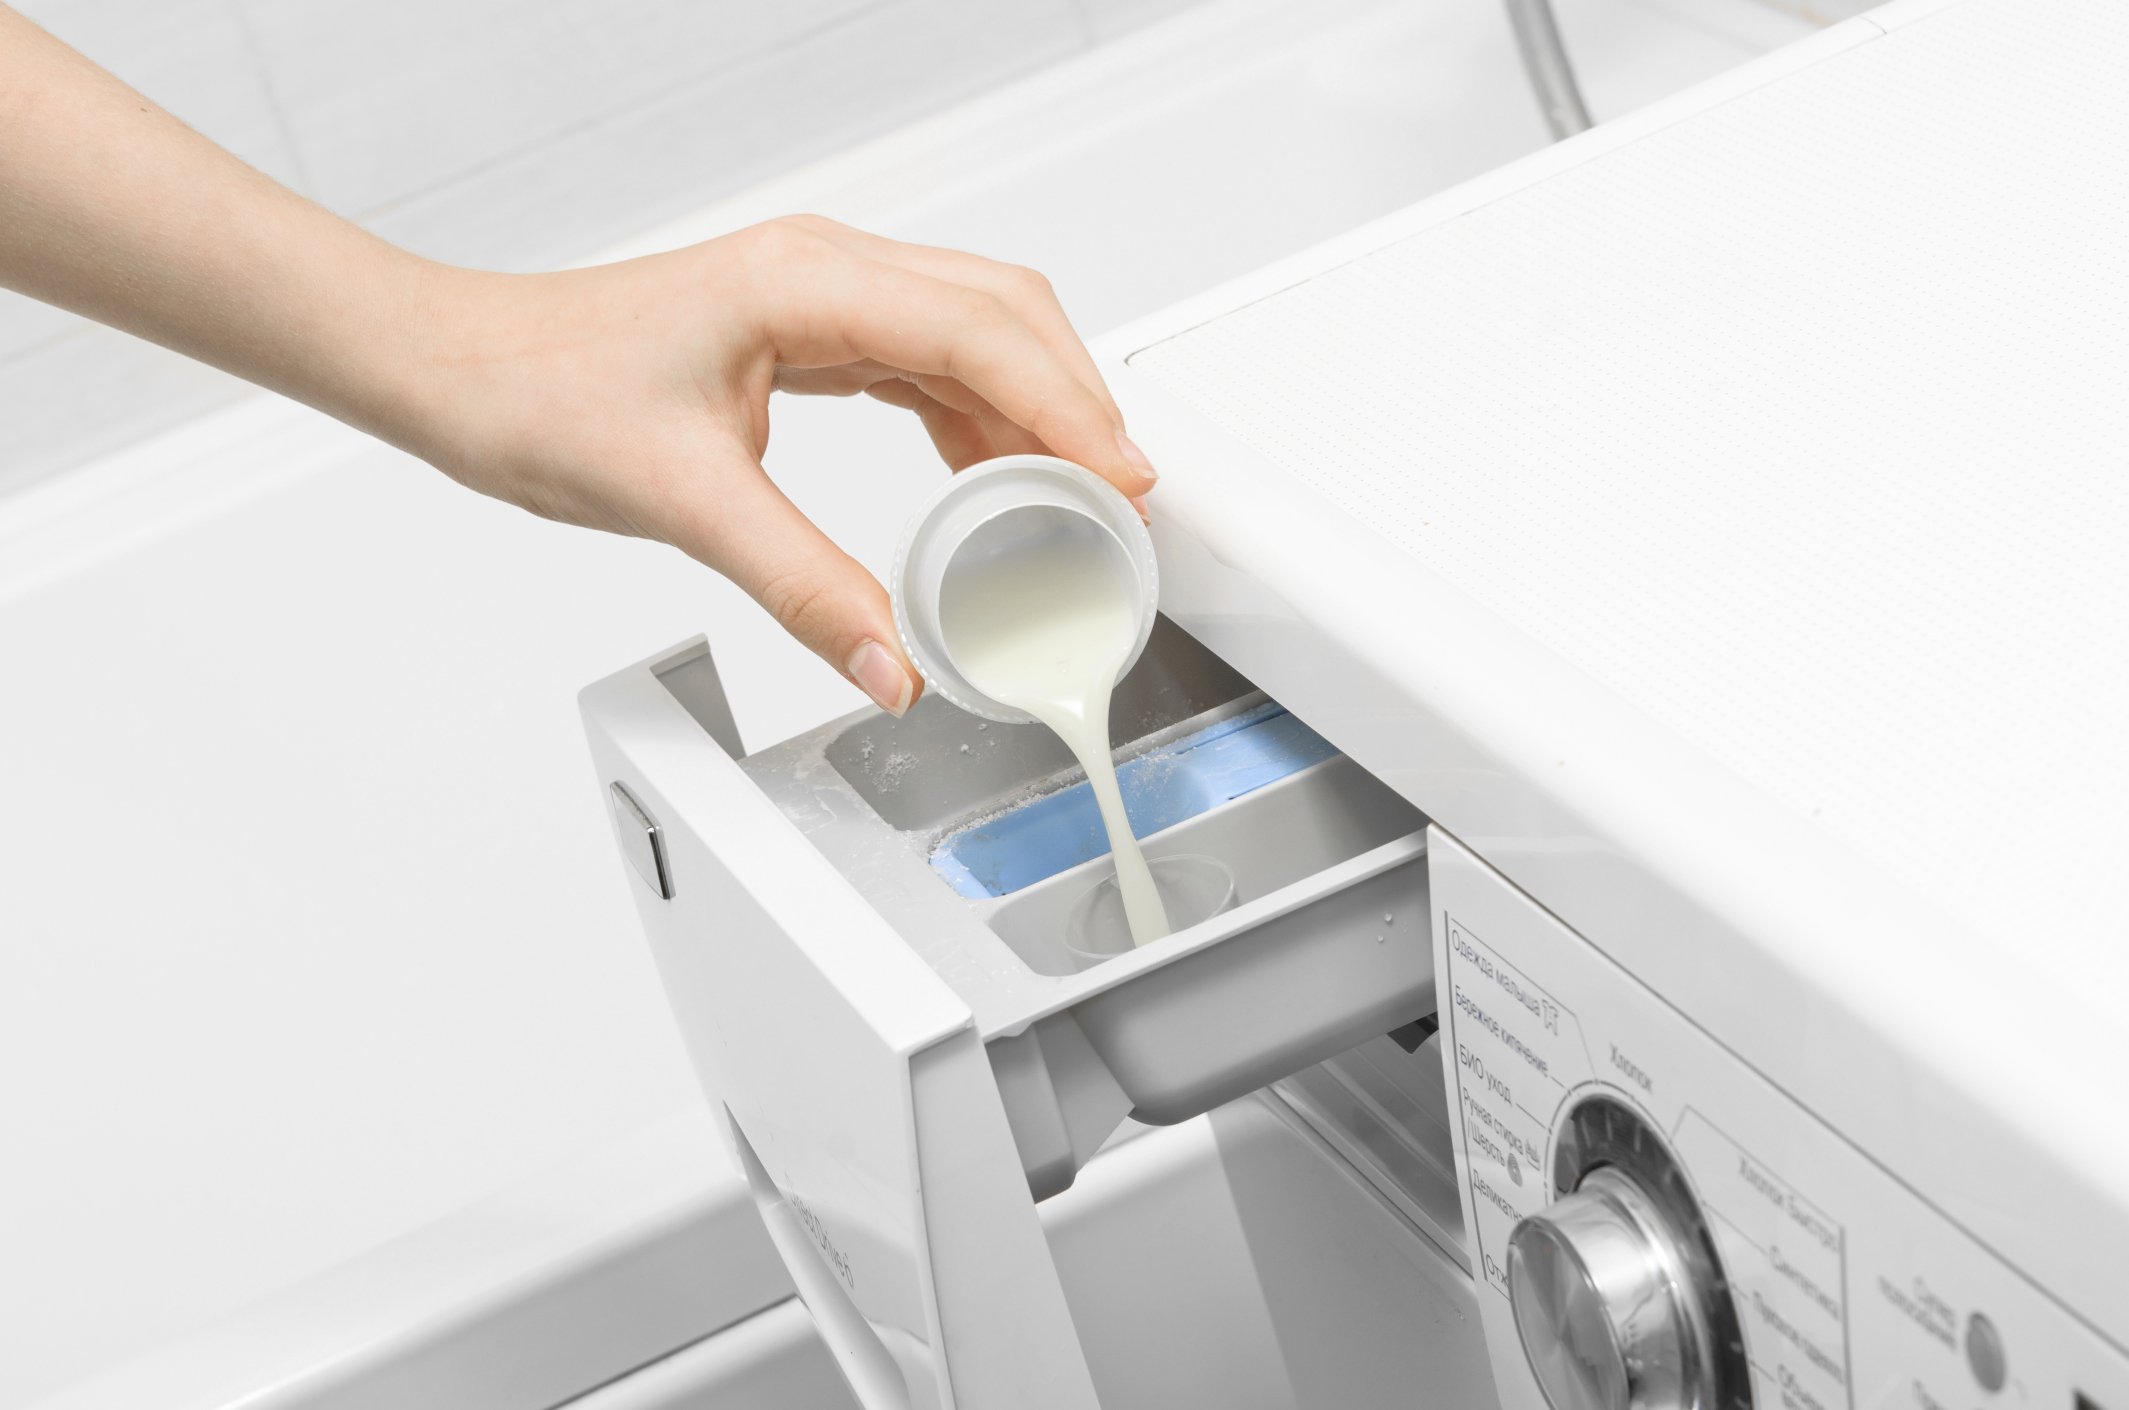 Мыло в стиральную машину автомат